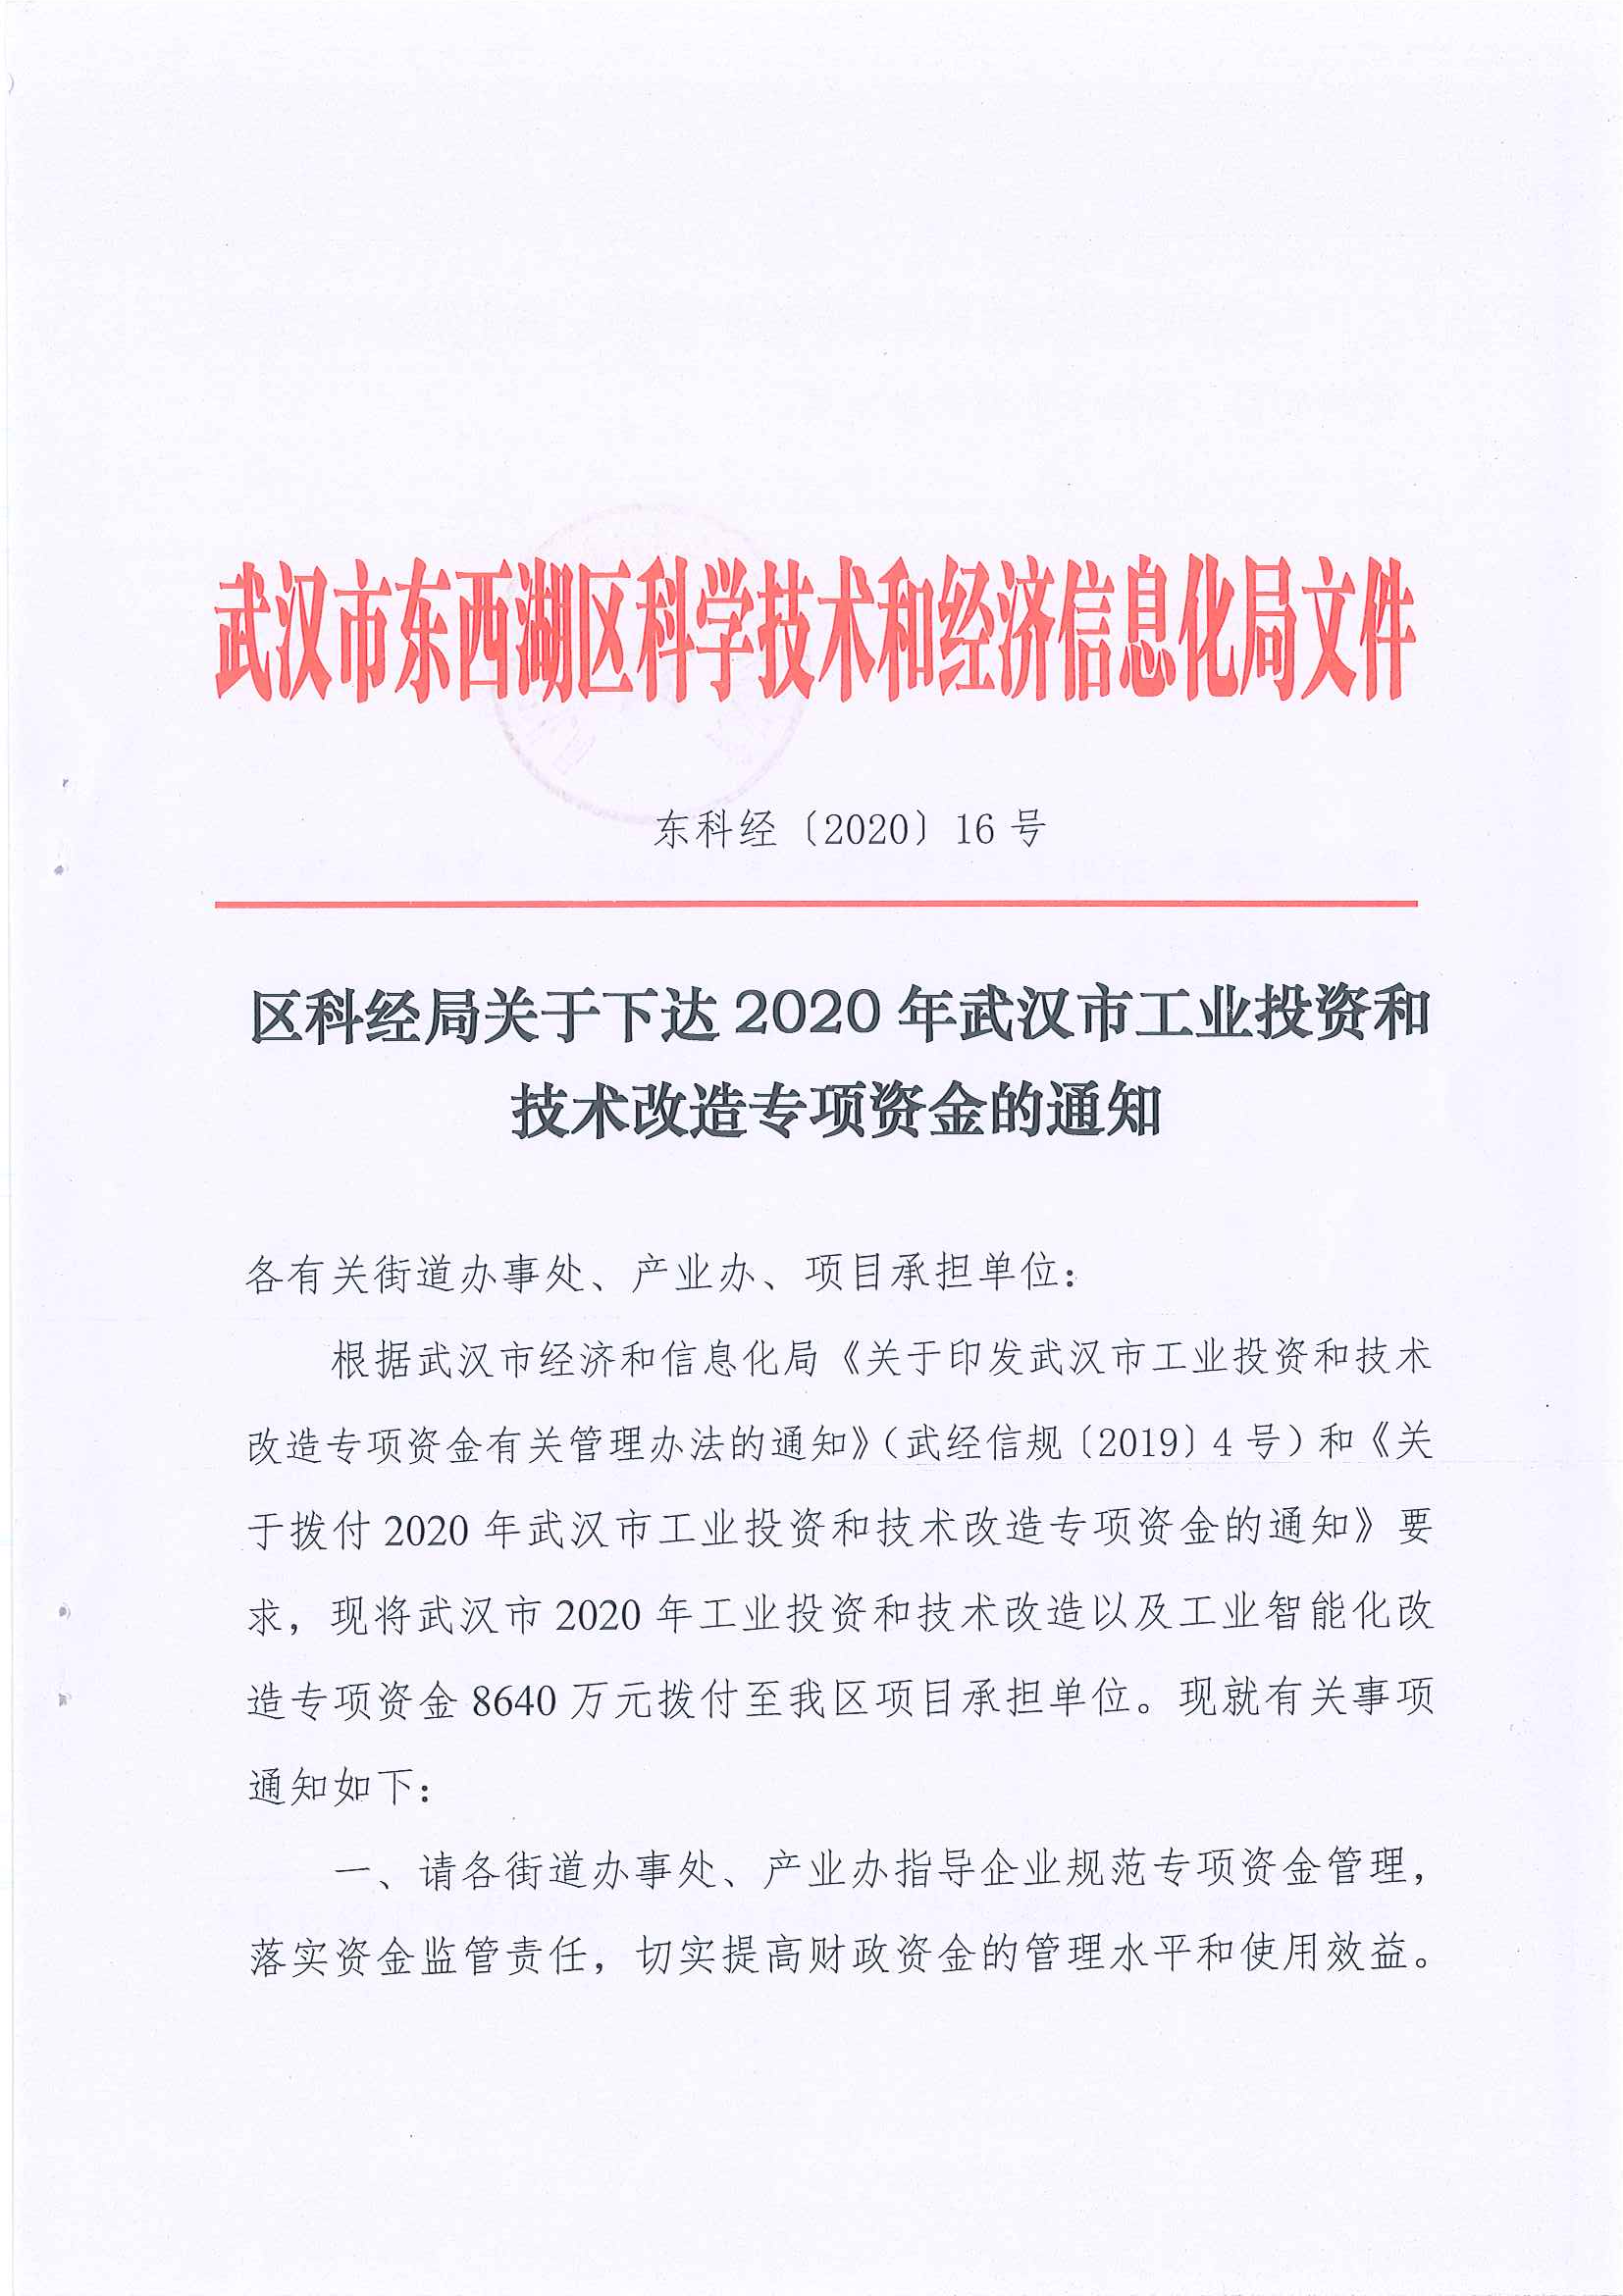 武漢市東西湖區科學技術和經濟信息化局文件